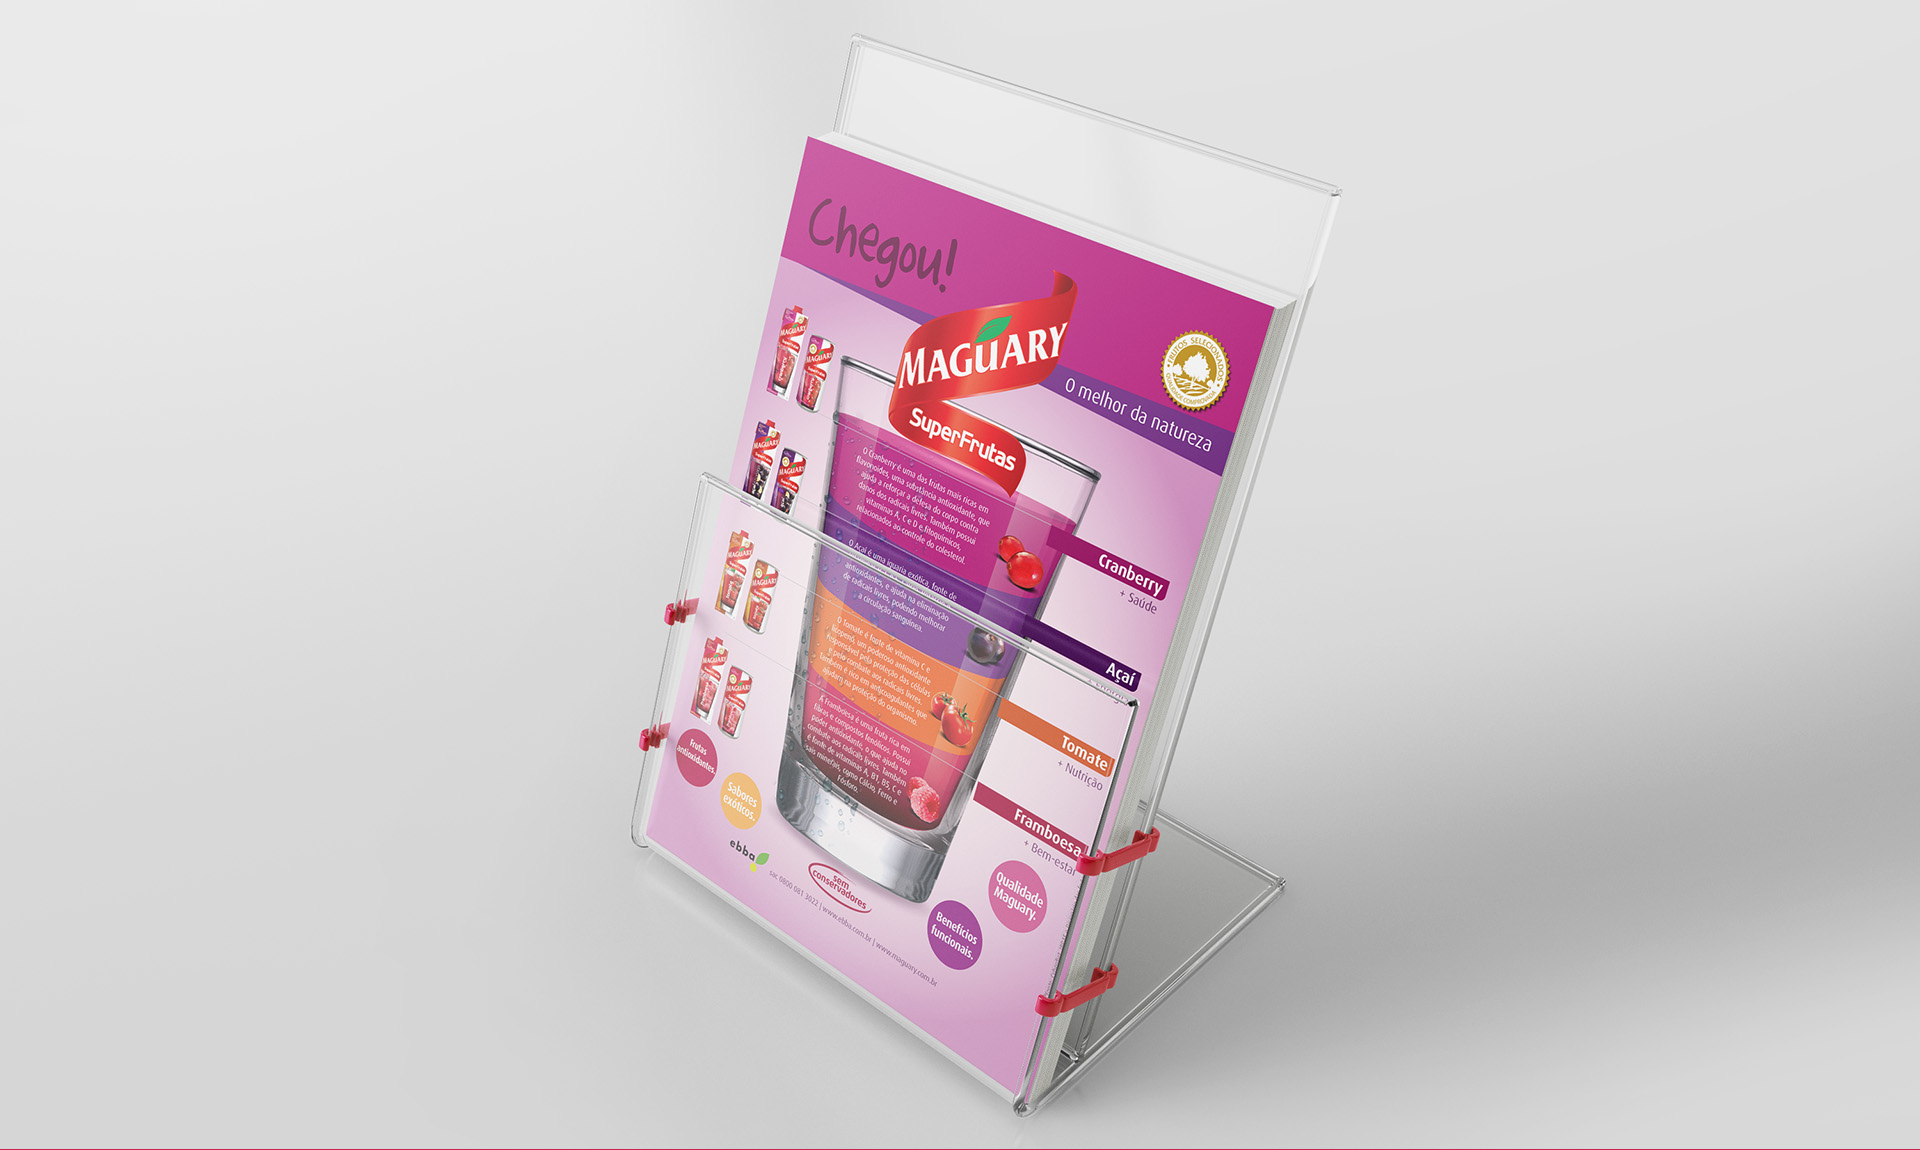 Imagem de folheto broadside com comunicação e key visual para lançamento de produtos SuperFrutas Maguary.